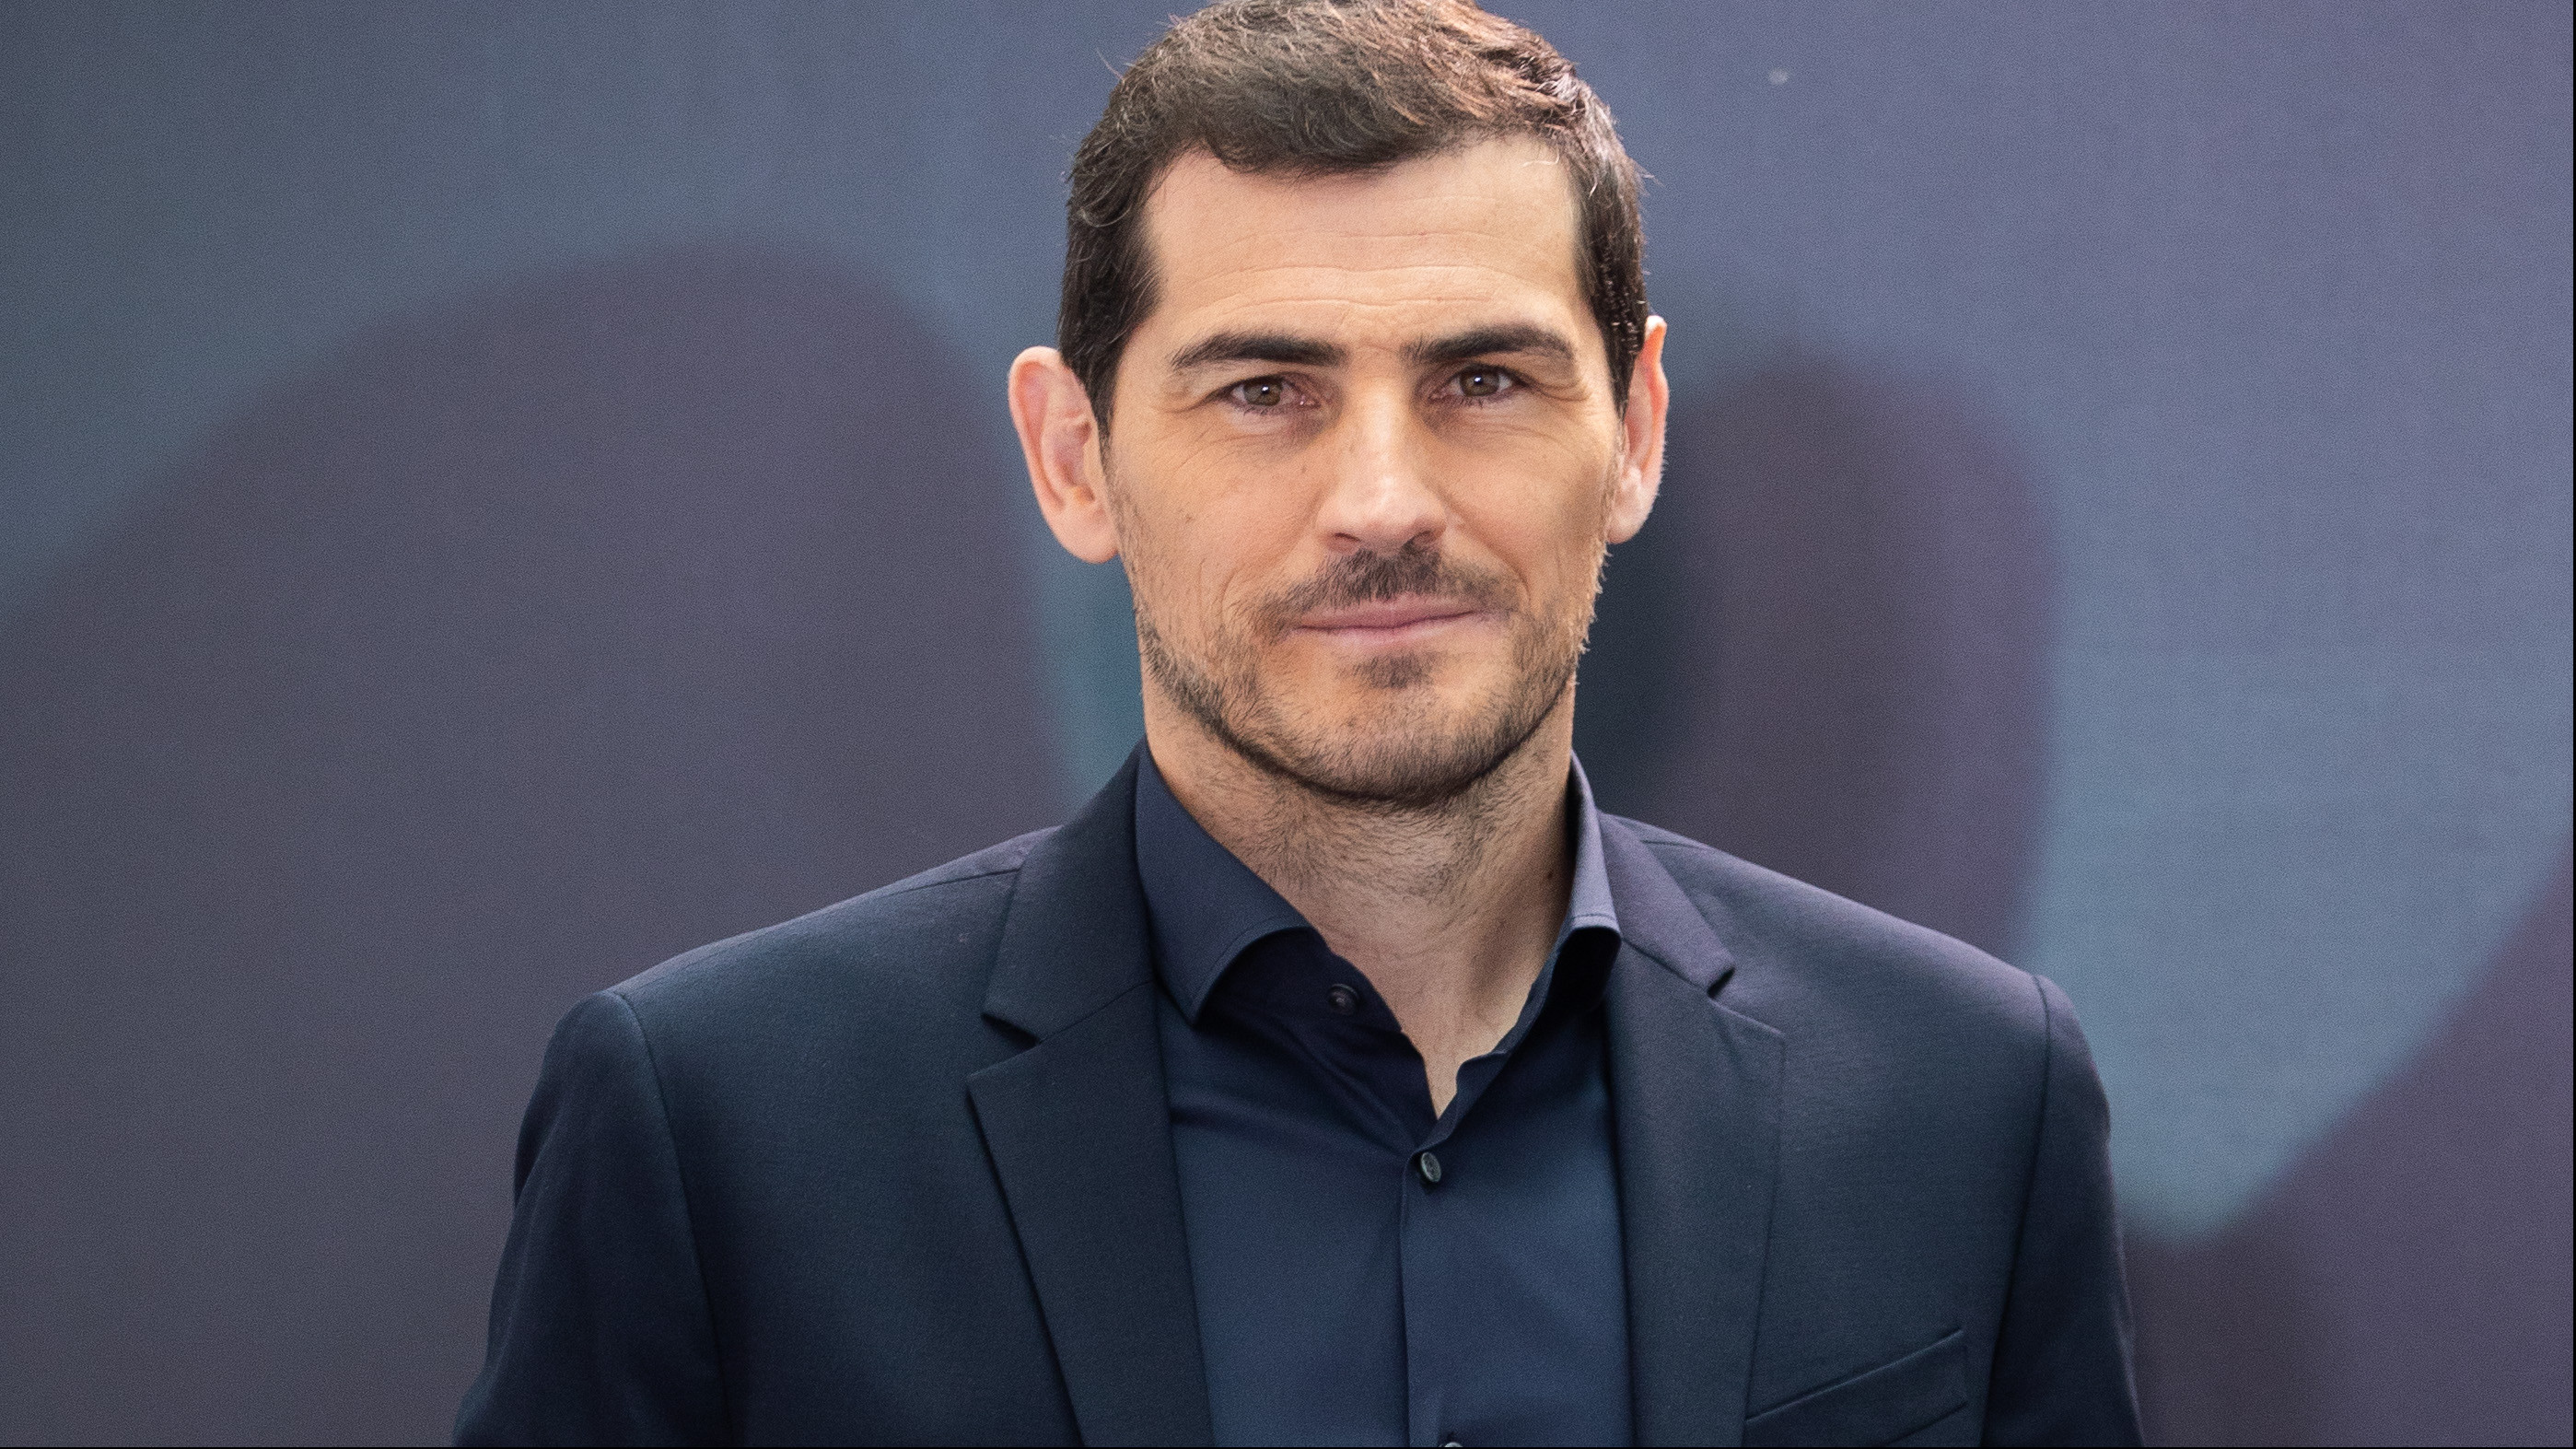 Iker Casillas confiesa: "Estoy necesitando ayuda profesional. Estoy agotado física y mentalmente"